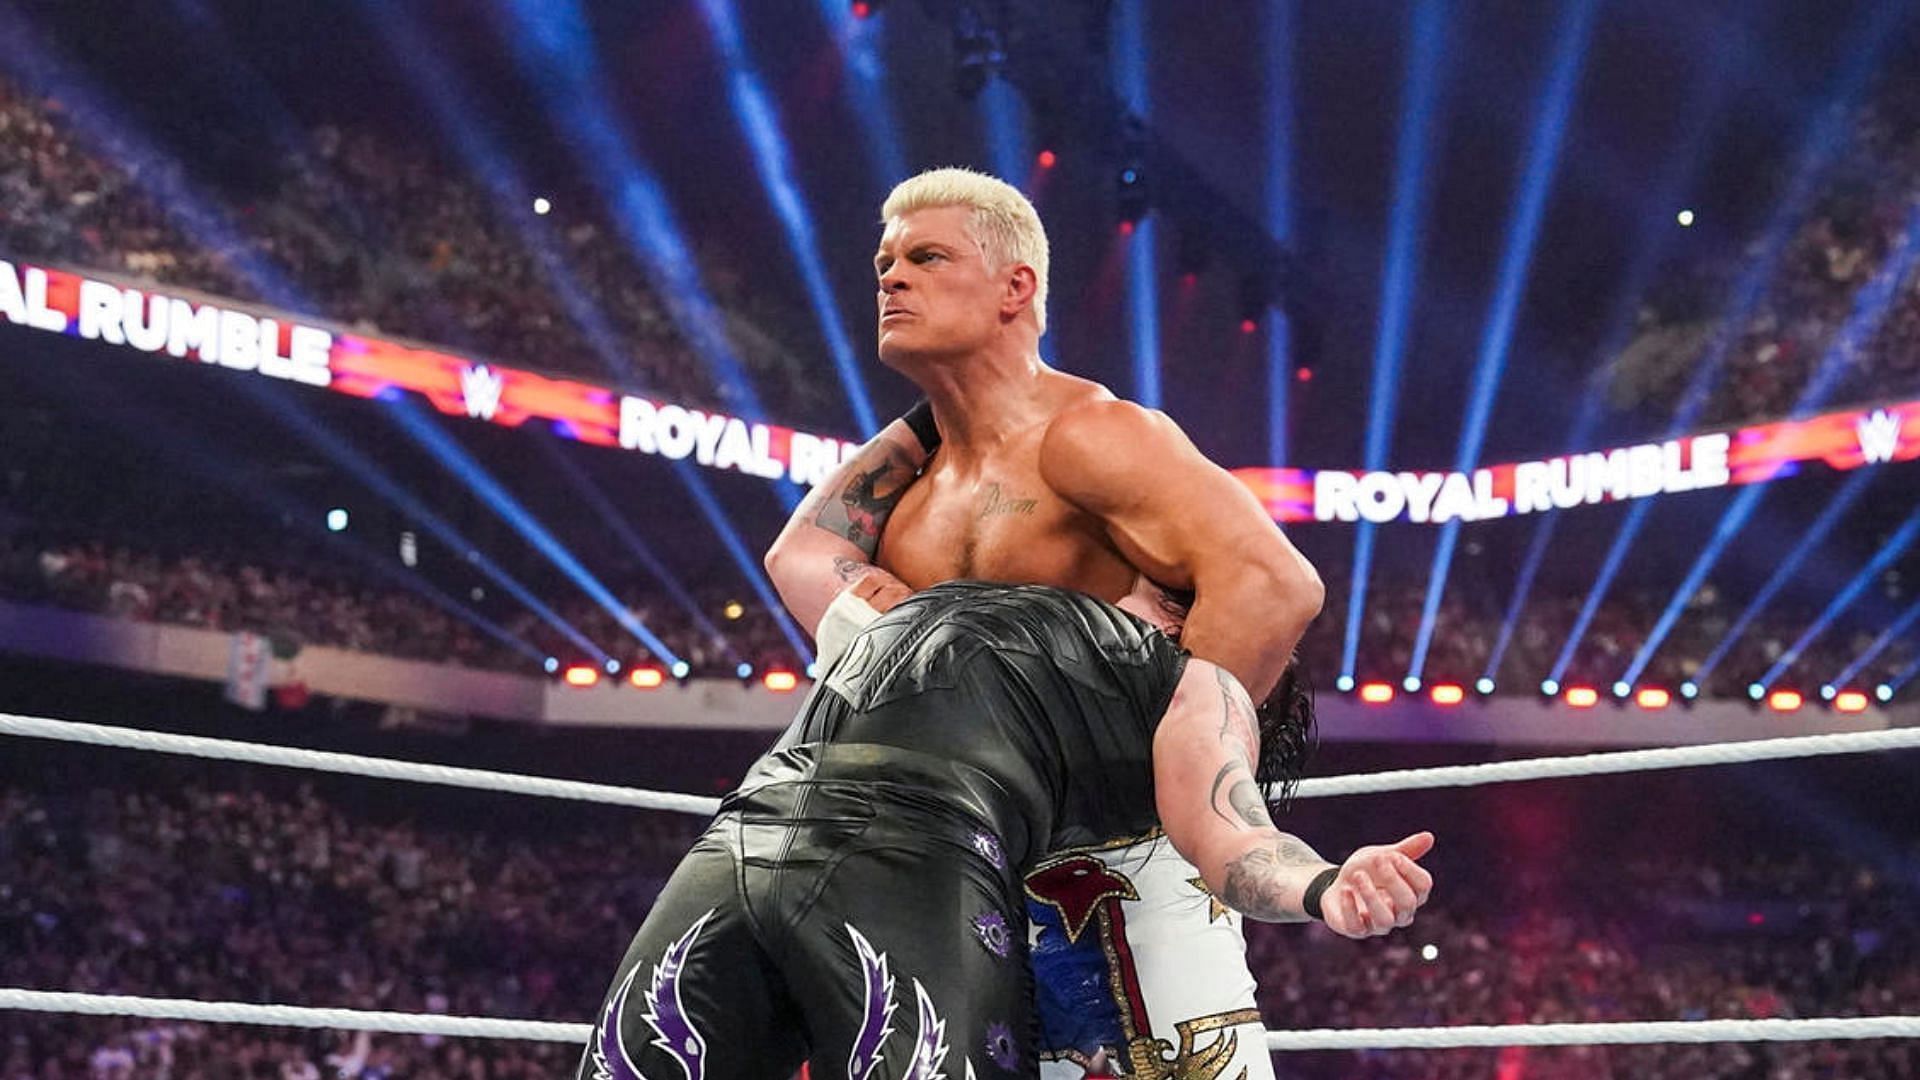 WWE Royal Rumble में कोडी रोड्स दिखाया जलवा